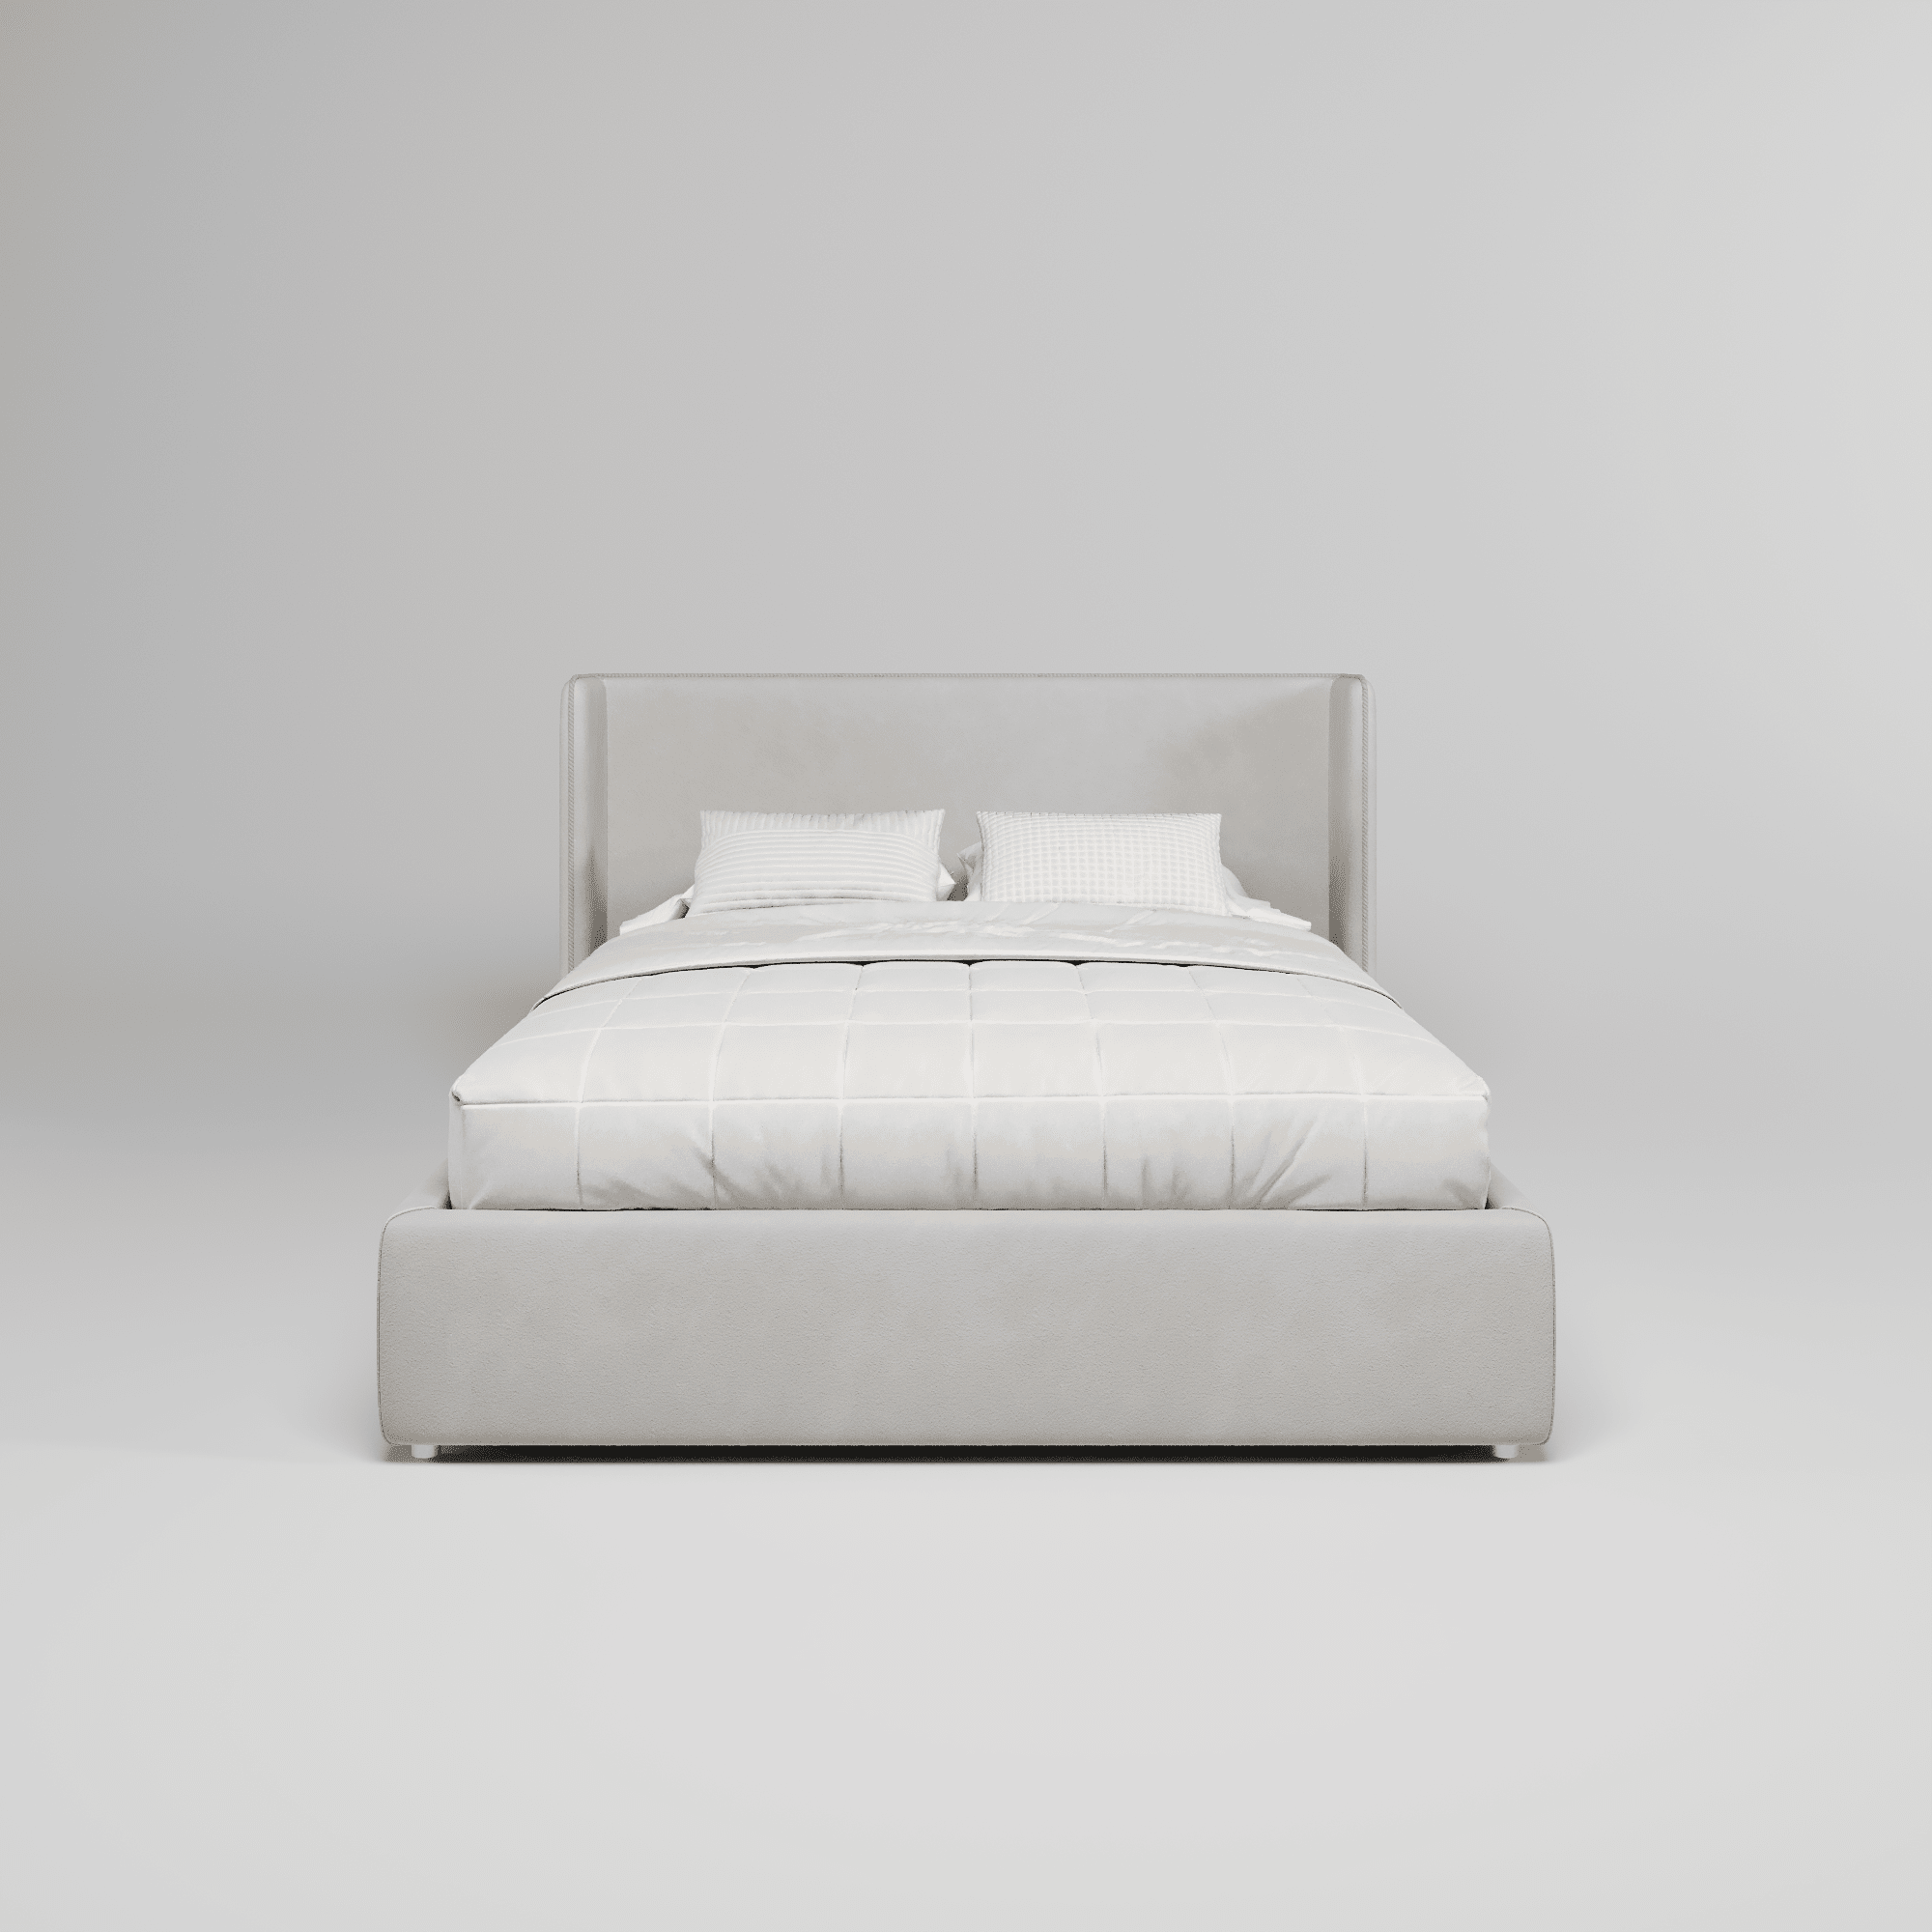 Кровать двуспальная мягкая Avrora с подъемным механизмом, 160x200